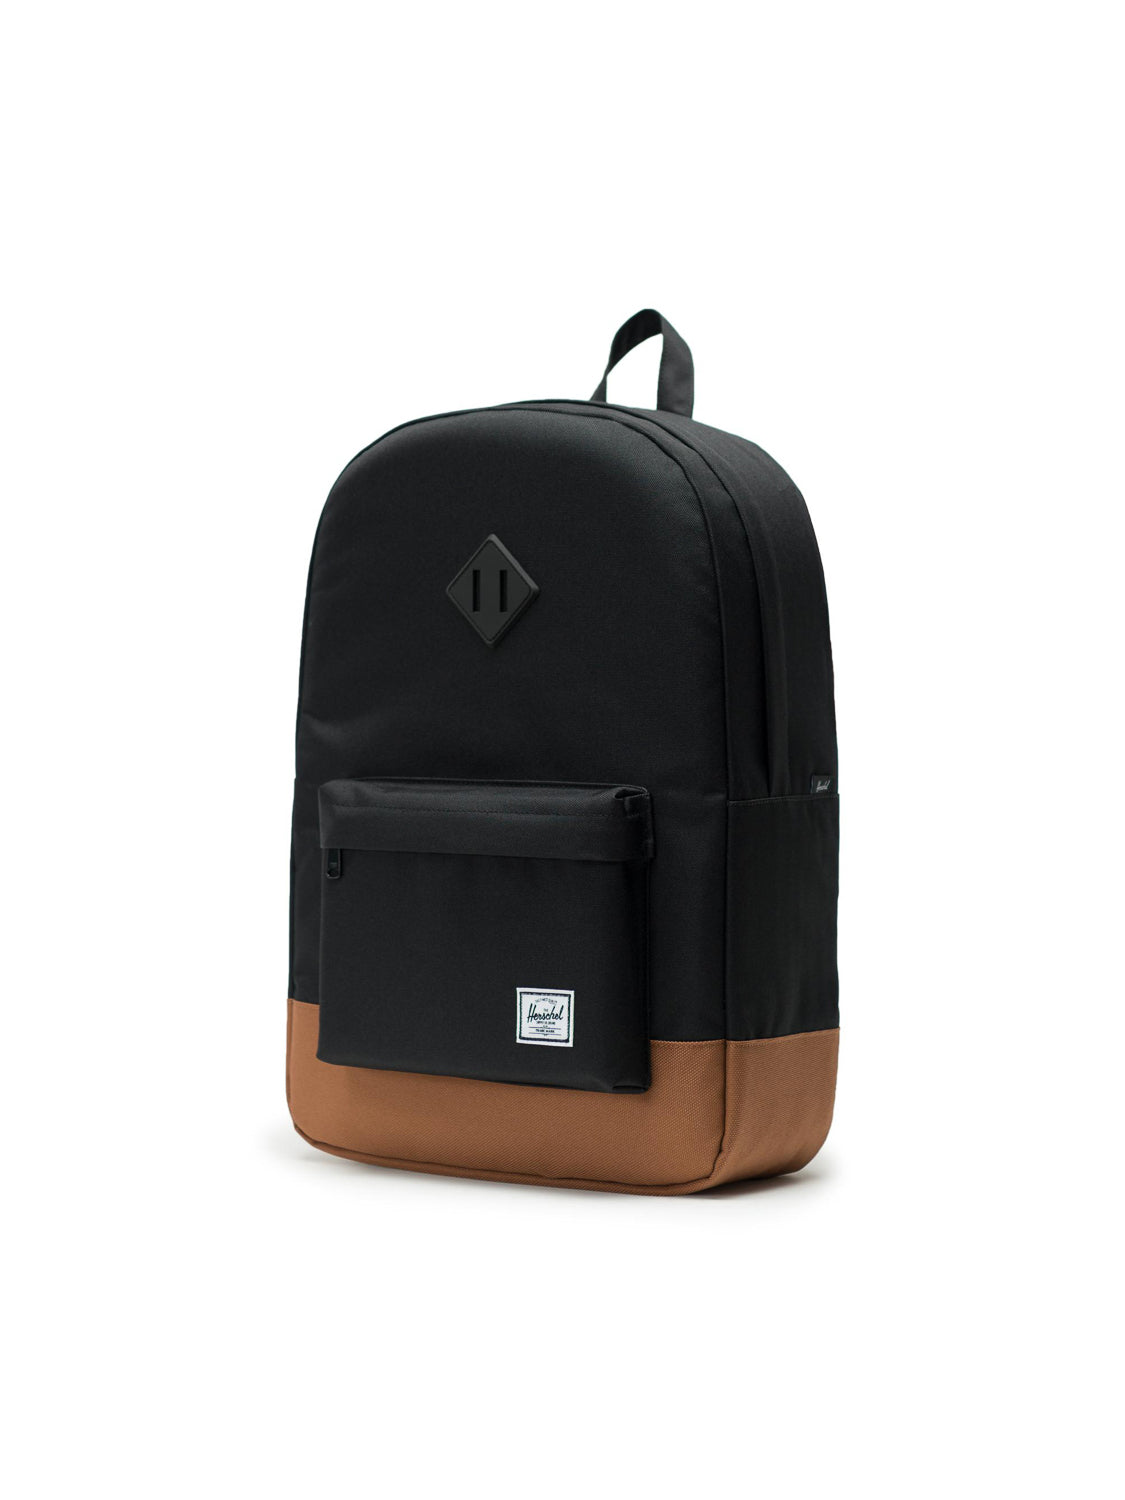 Herschel - Heritage backpack